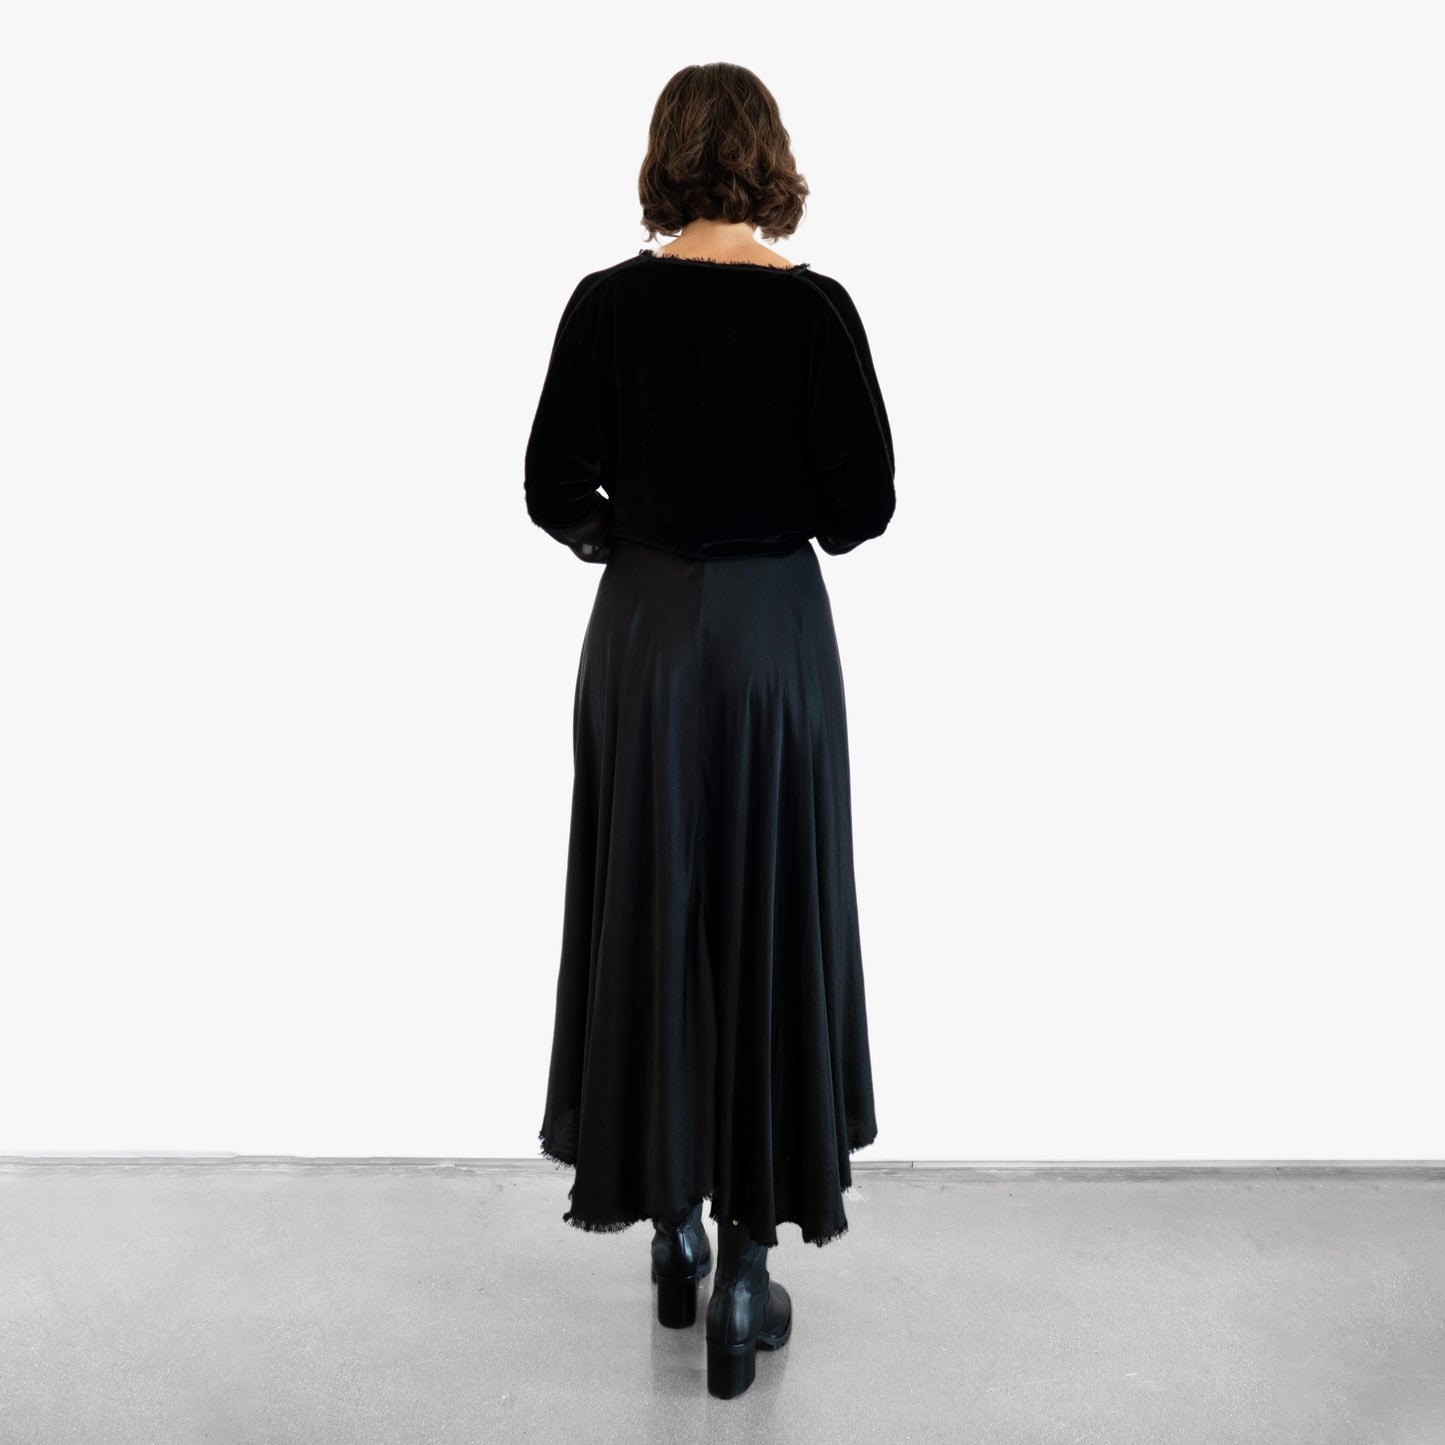 Model wearing a black velvet blouse and black silk skirt